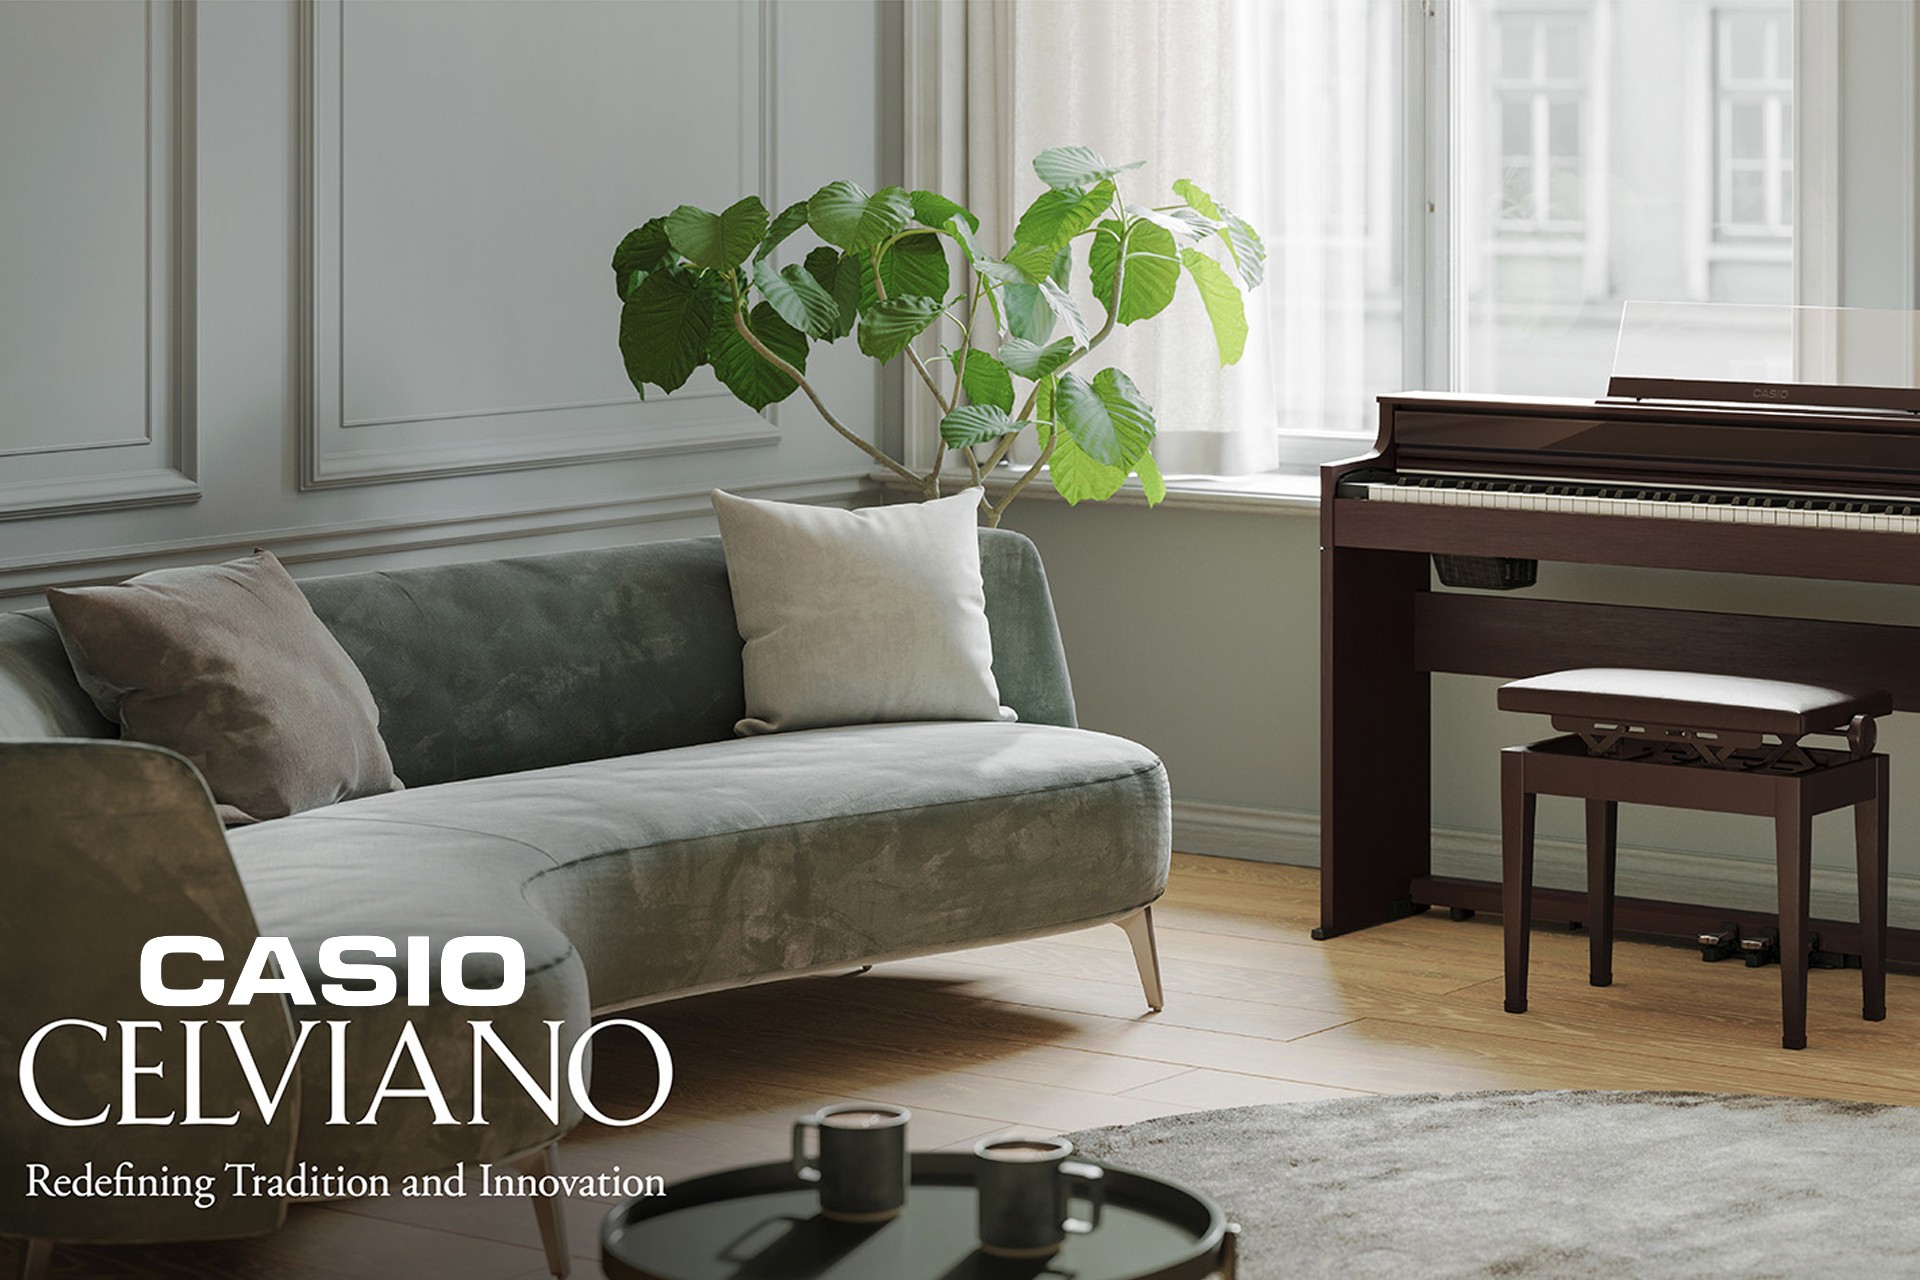 Odkryj serię pianin cyfrowych Casio Celviano - Połączenie elegancji i technologii